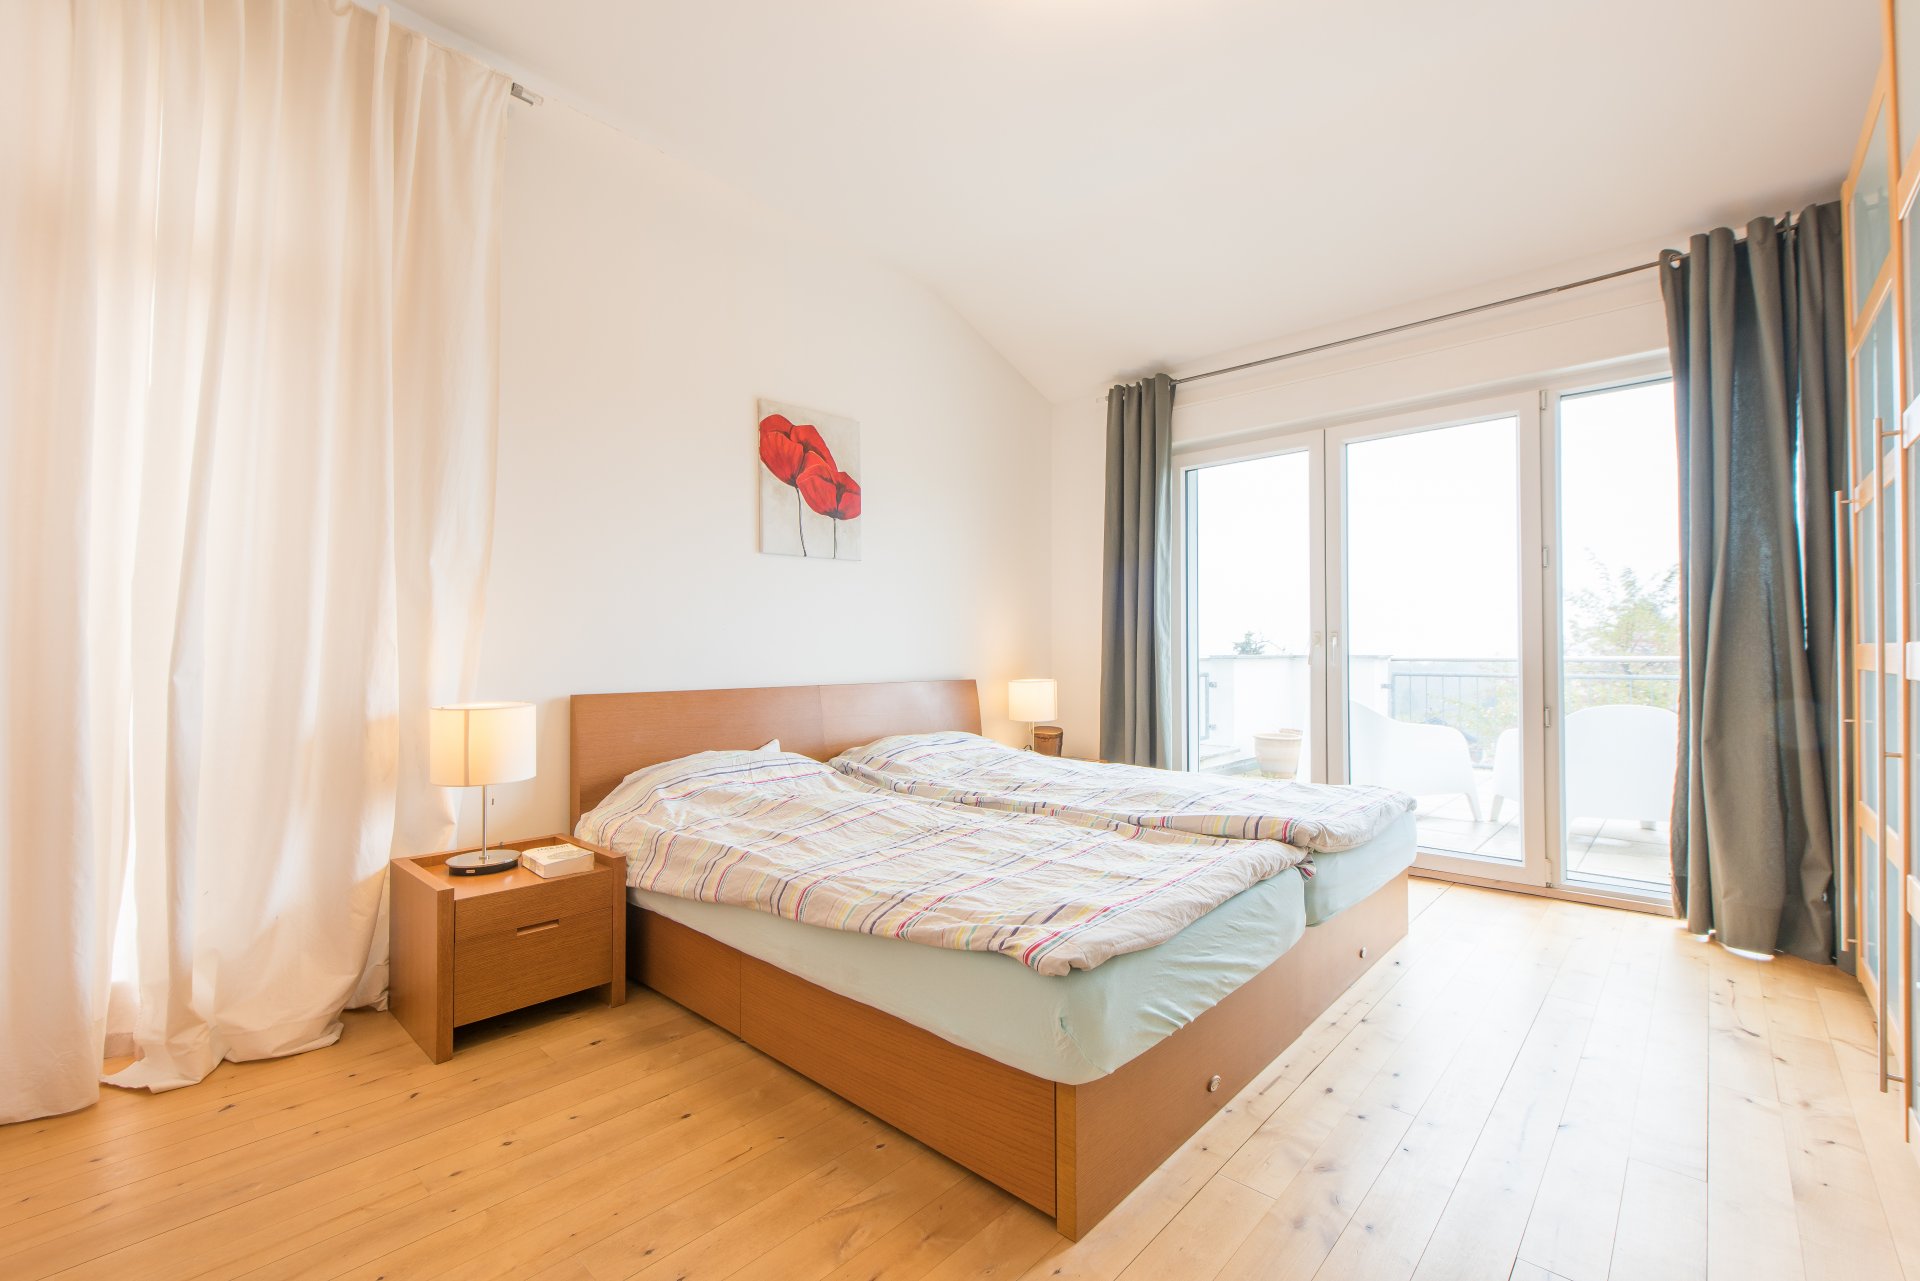 Überhöhe in den Schlafzimmern und viel Terrasse mit doppelflügligen Fenstertüren - Oliver Reifferscheid - Immobilienmakler Darmstadt